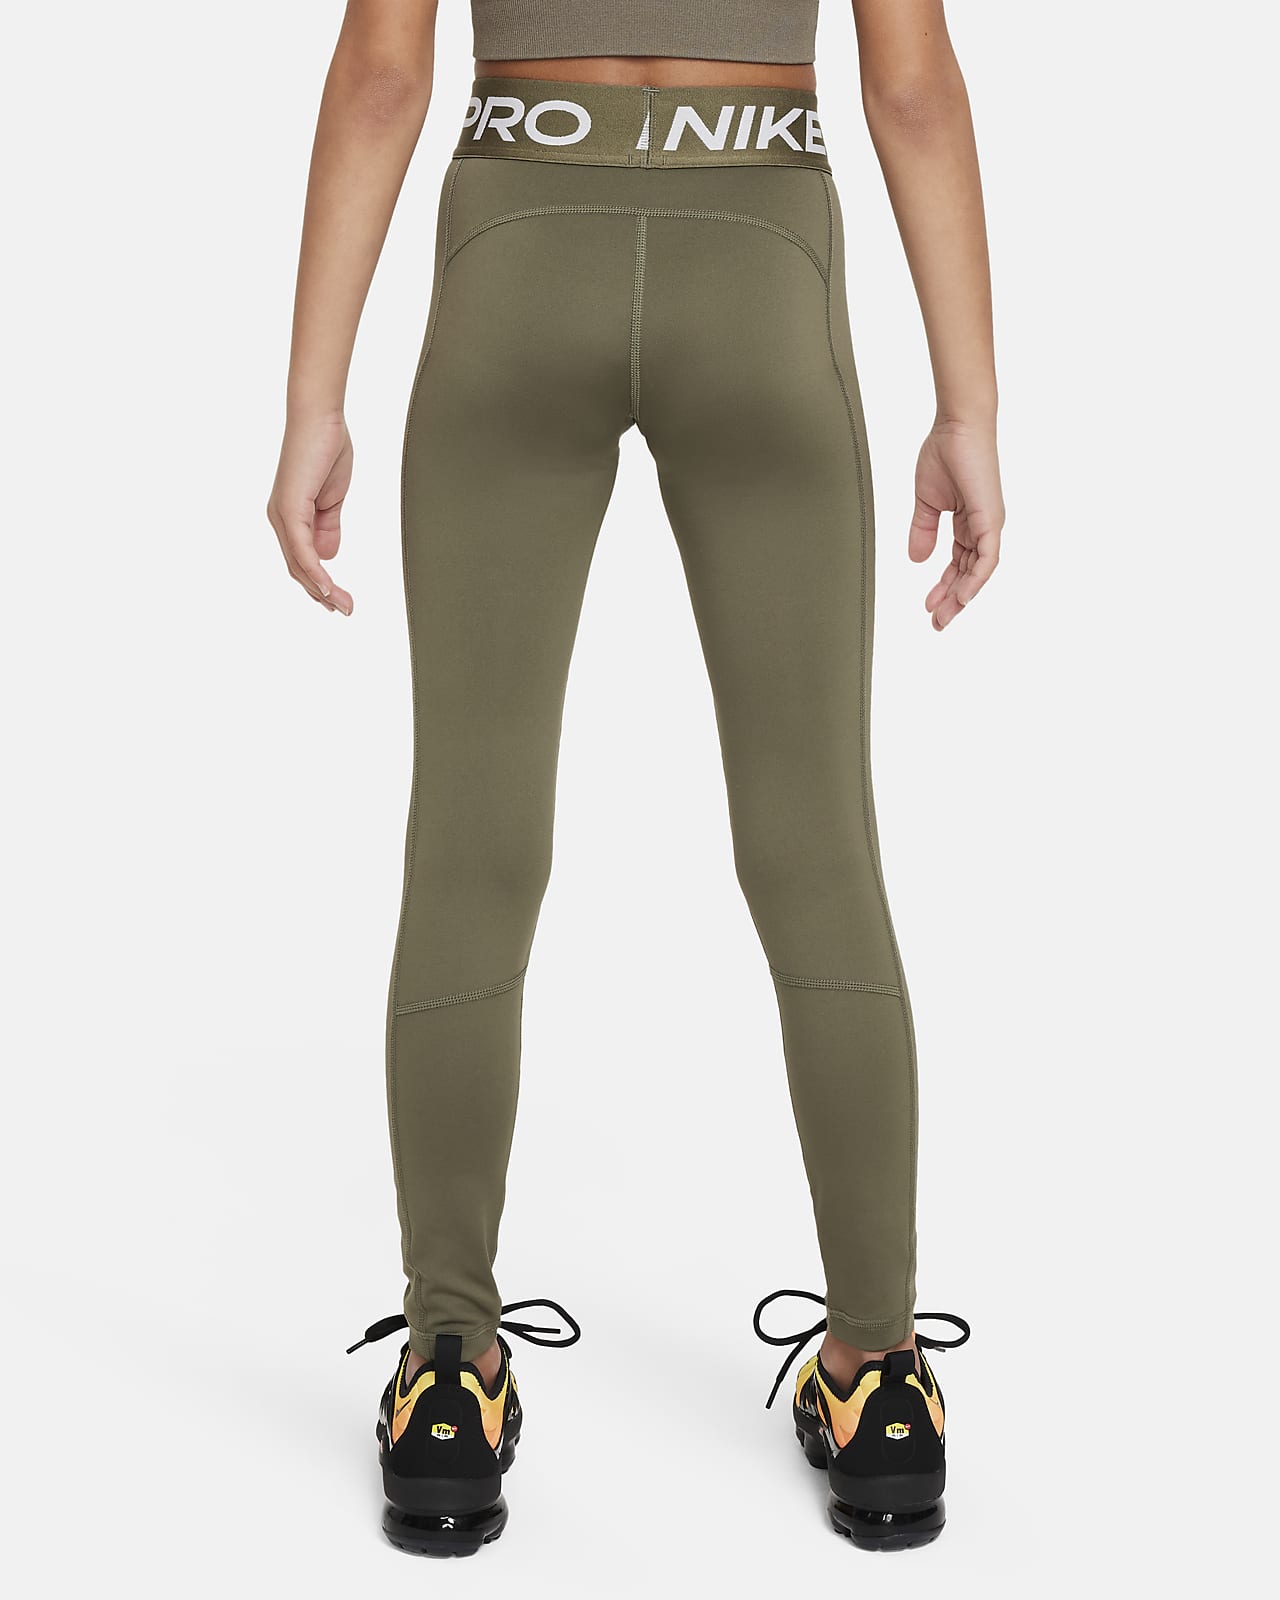 Nike Dri-Fit Go Firm-Support Mid-Rise 7/8 - Leggings Women's | Buy online |  Alpinetrek.co.uk